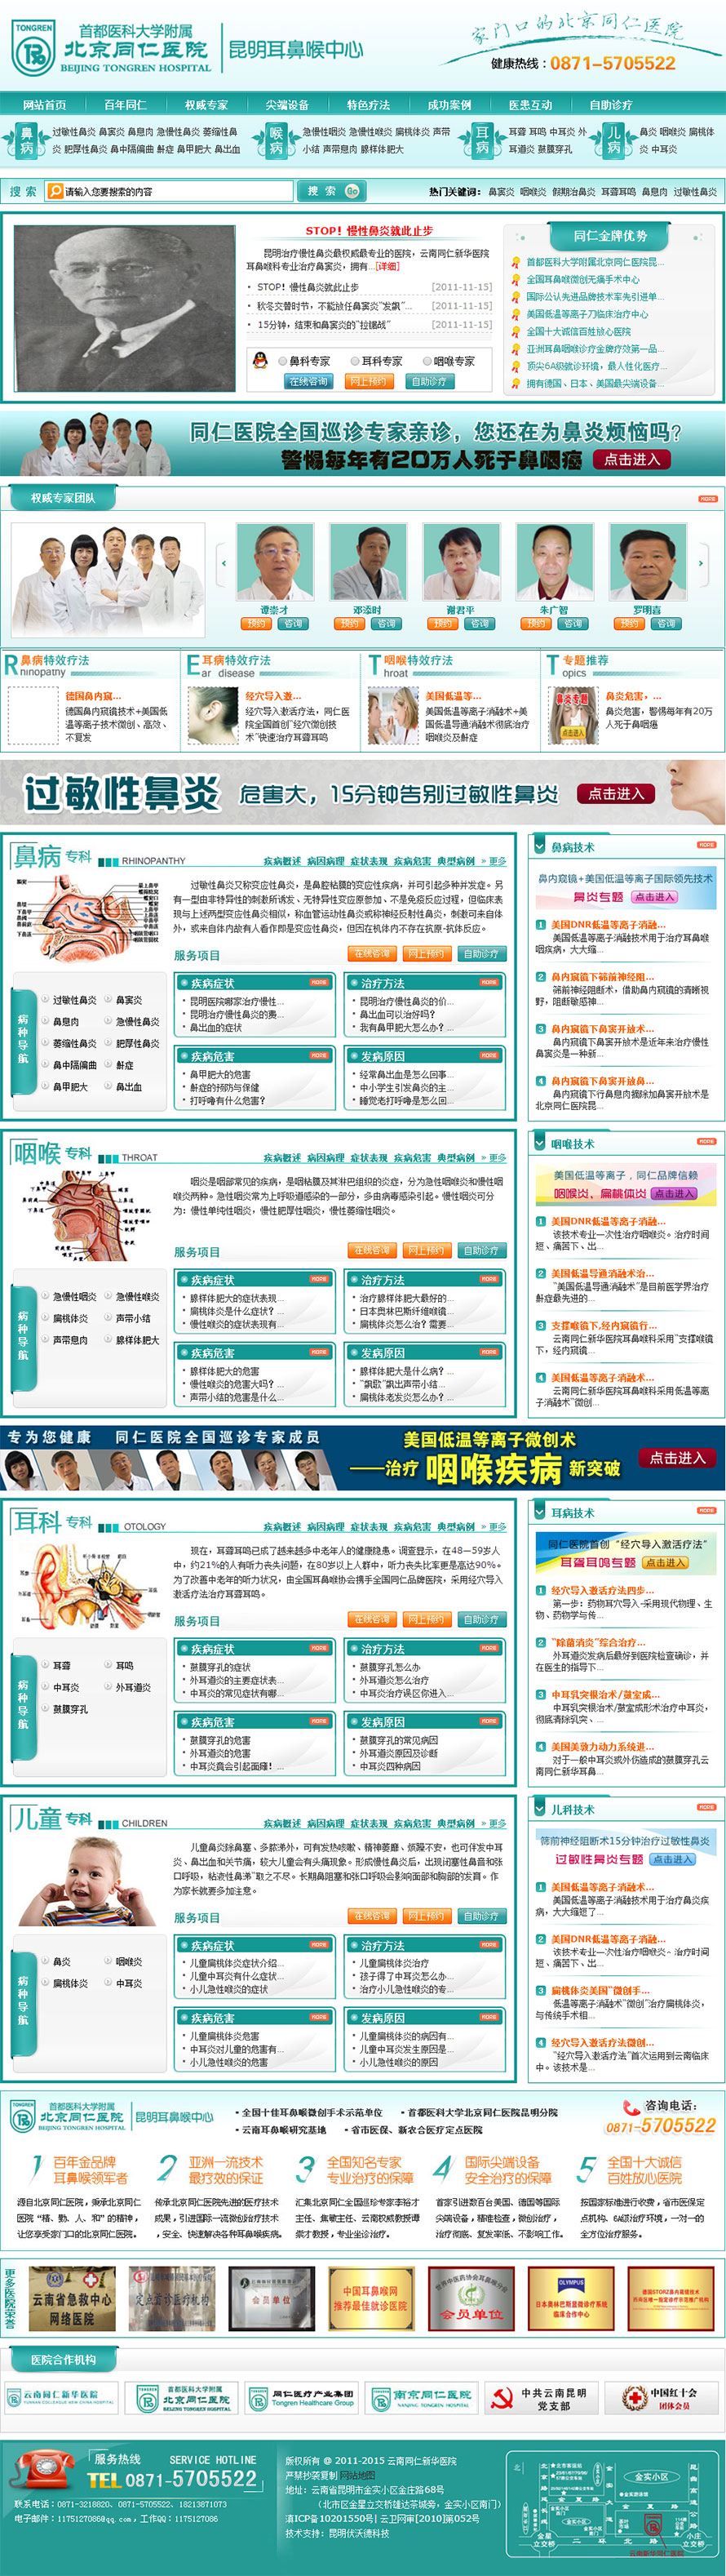 云南龙头科技有限公司网站案例――北京同仁医院昆明耳鼻喉中心